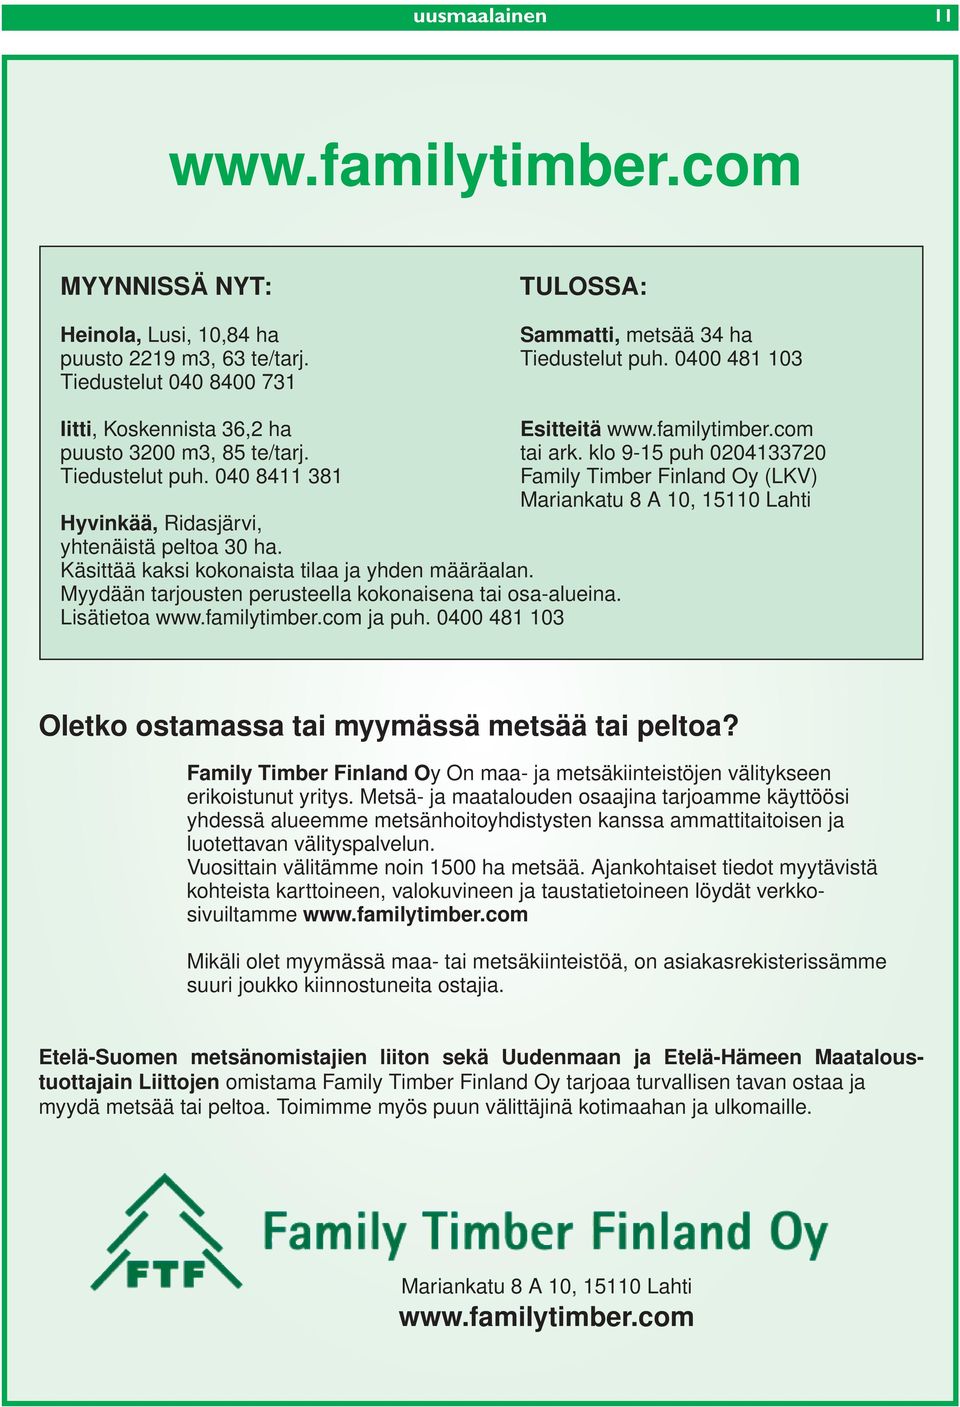 040 8411 381 Family Timber Finland Oy (LKV) Mariankatu 8 A 10, 15110 Lahti Hyvinkää, Ridasjärvi, yhtenäistä peltoa 30 ha. Käsittää kaksi kokonaista tilaa ja yhden määräalan.